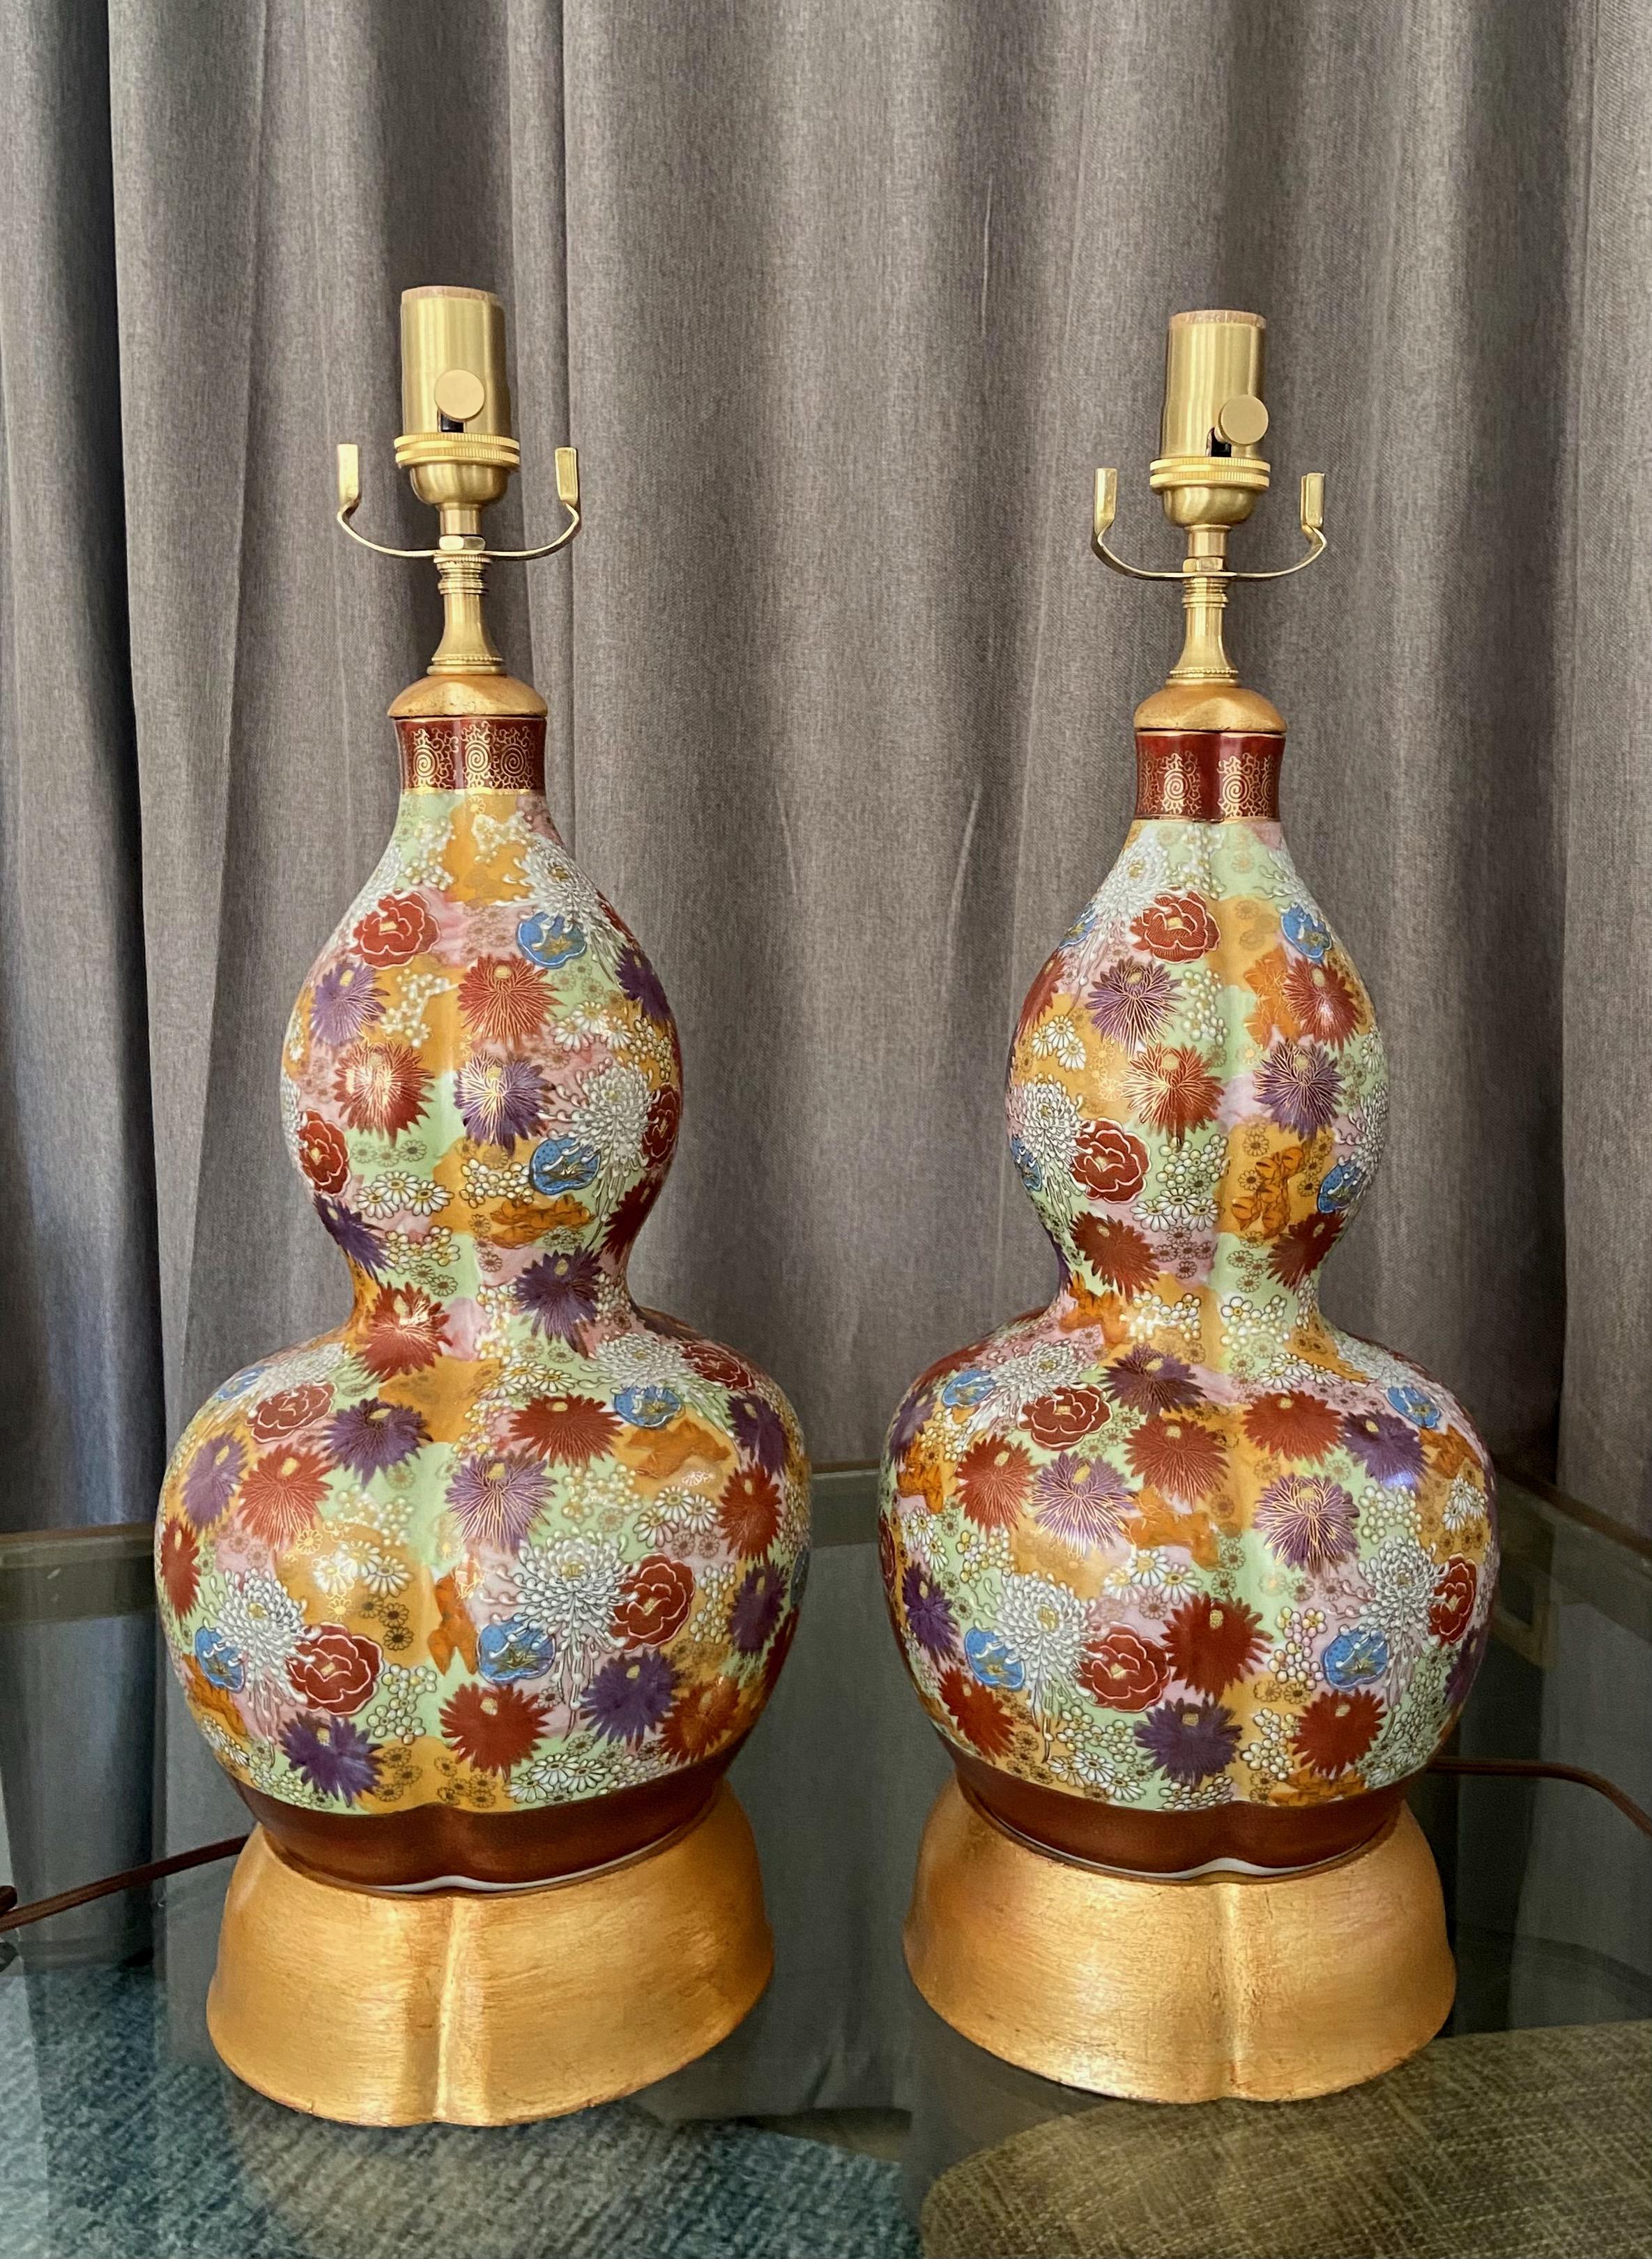 Zwei handbemalte japanische Satsuma-Vasen mit Blumenmotiven auf vergoldeten Lampenfüßen aus Holz.  Die Vasen sind üppig und fachmännisch mit verschiedenen Blumen und Blüten in einer Vielzahl von satten Farben bemalt. Beide Vasen sind am Boden